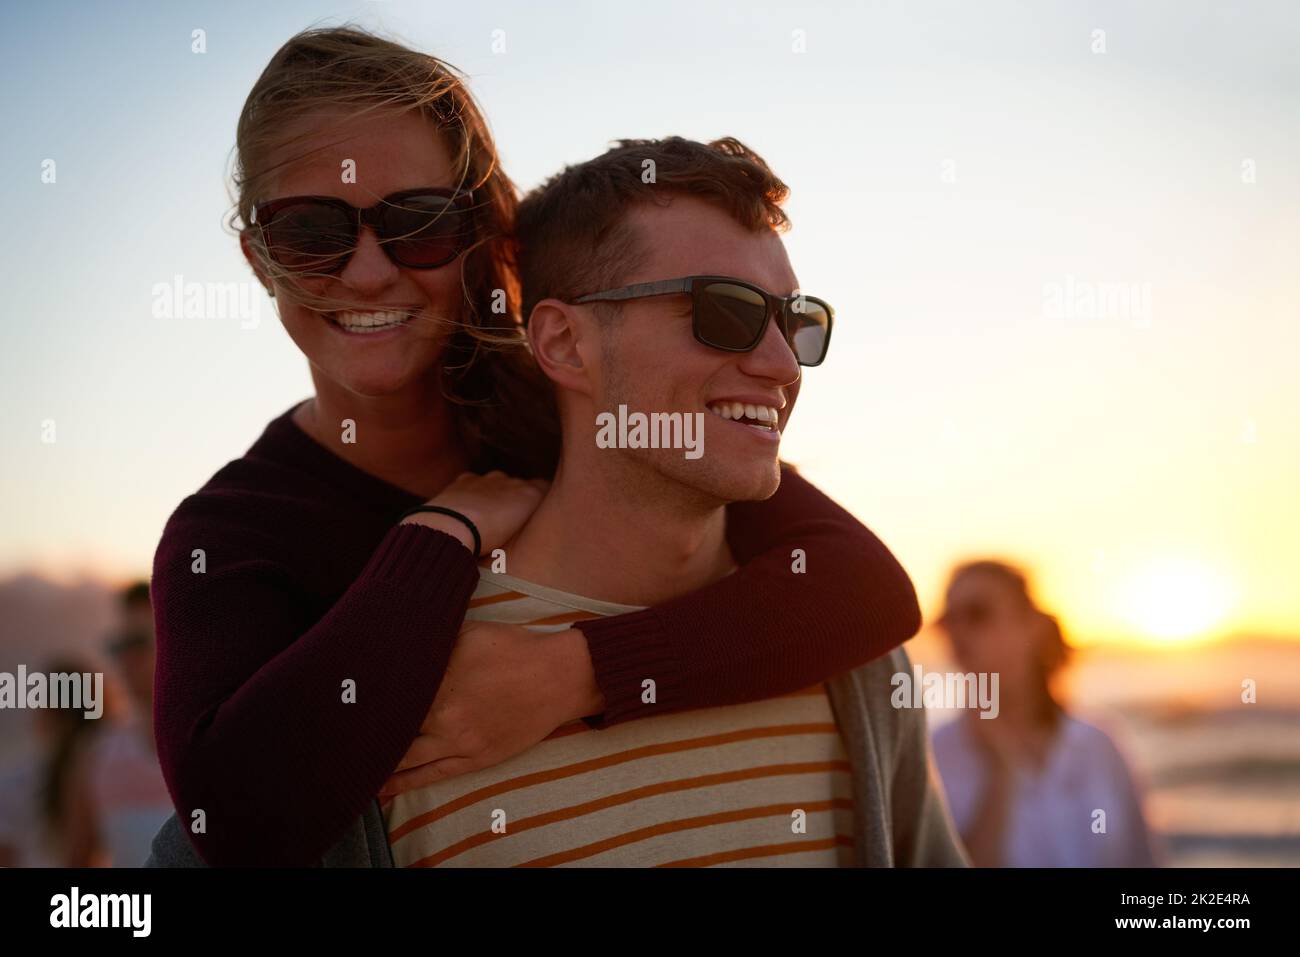 Je suis heureux quand je l'ai proche. Photo courte d'un jeune homme affectueux qui soutient sa petite amie sur la plage. Banque D'Images